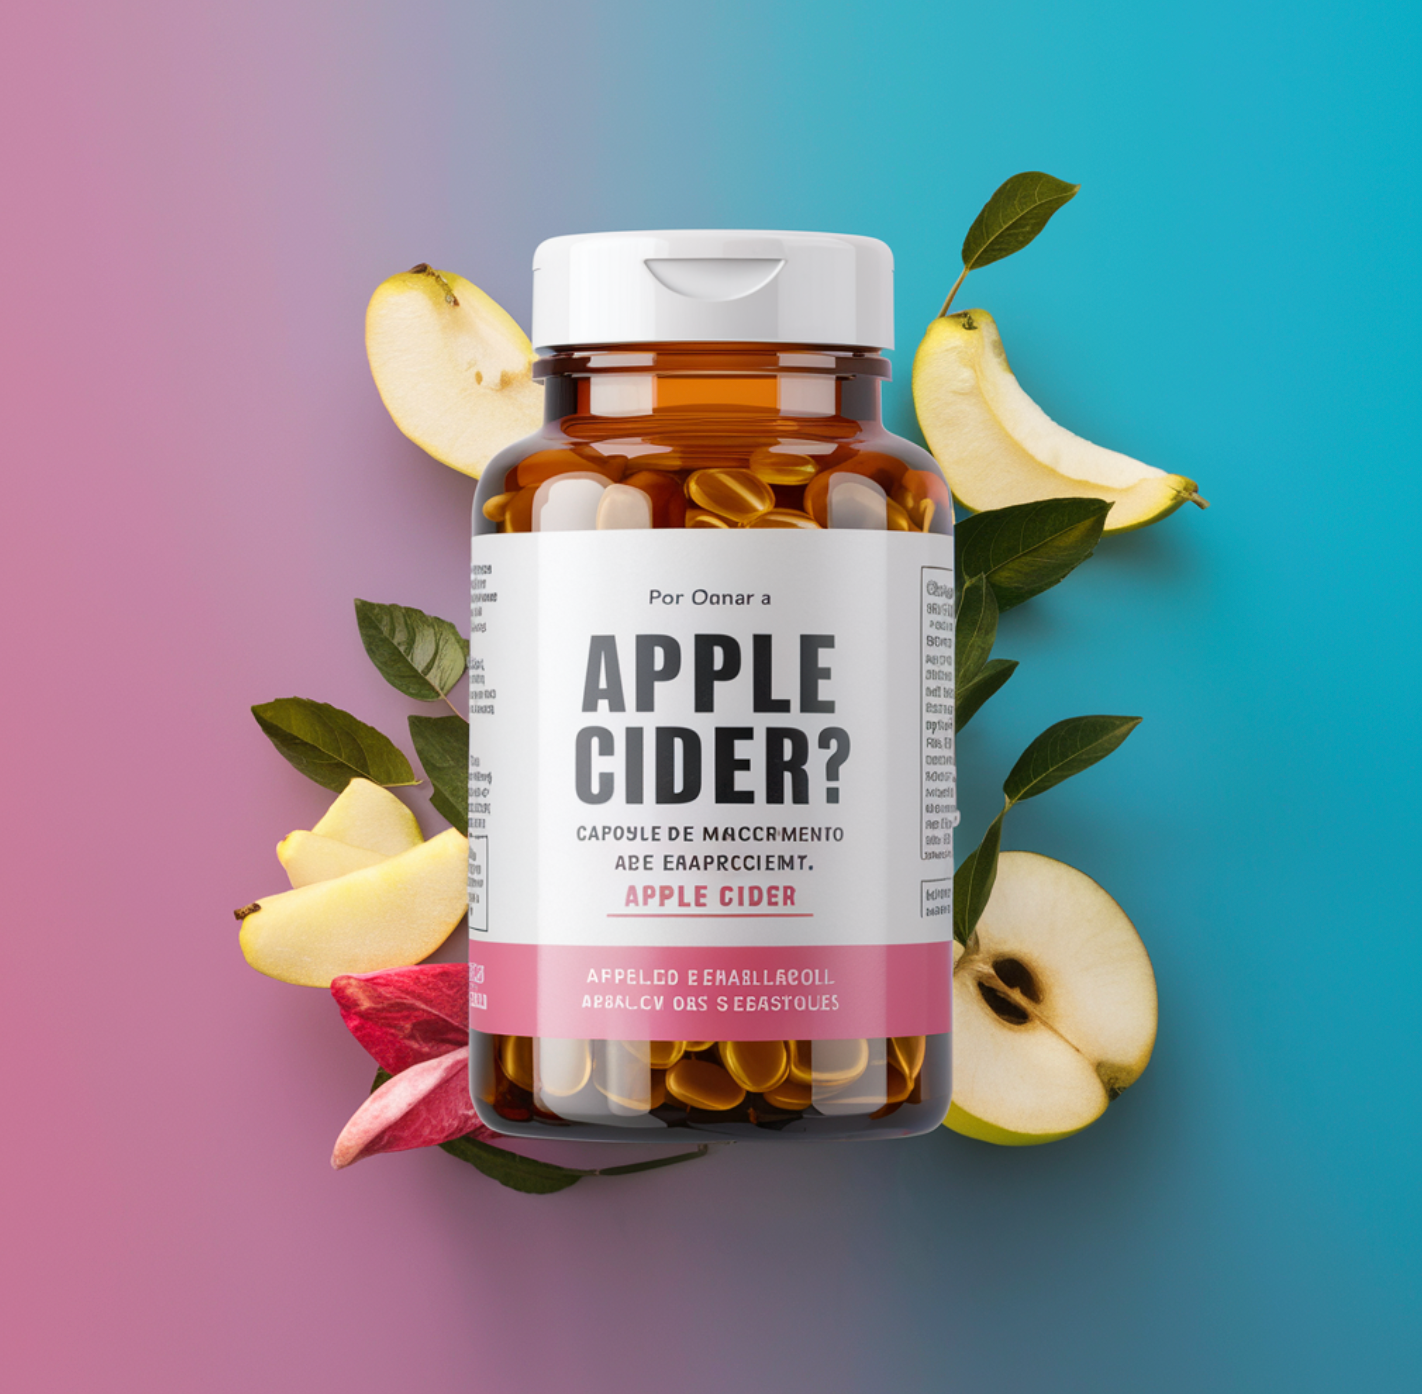 Apple Cider - Capsulas naturais para Emagrecer!